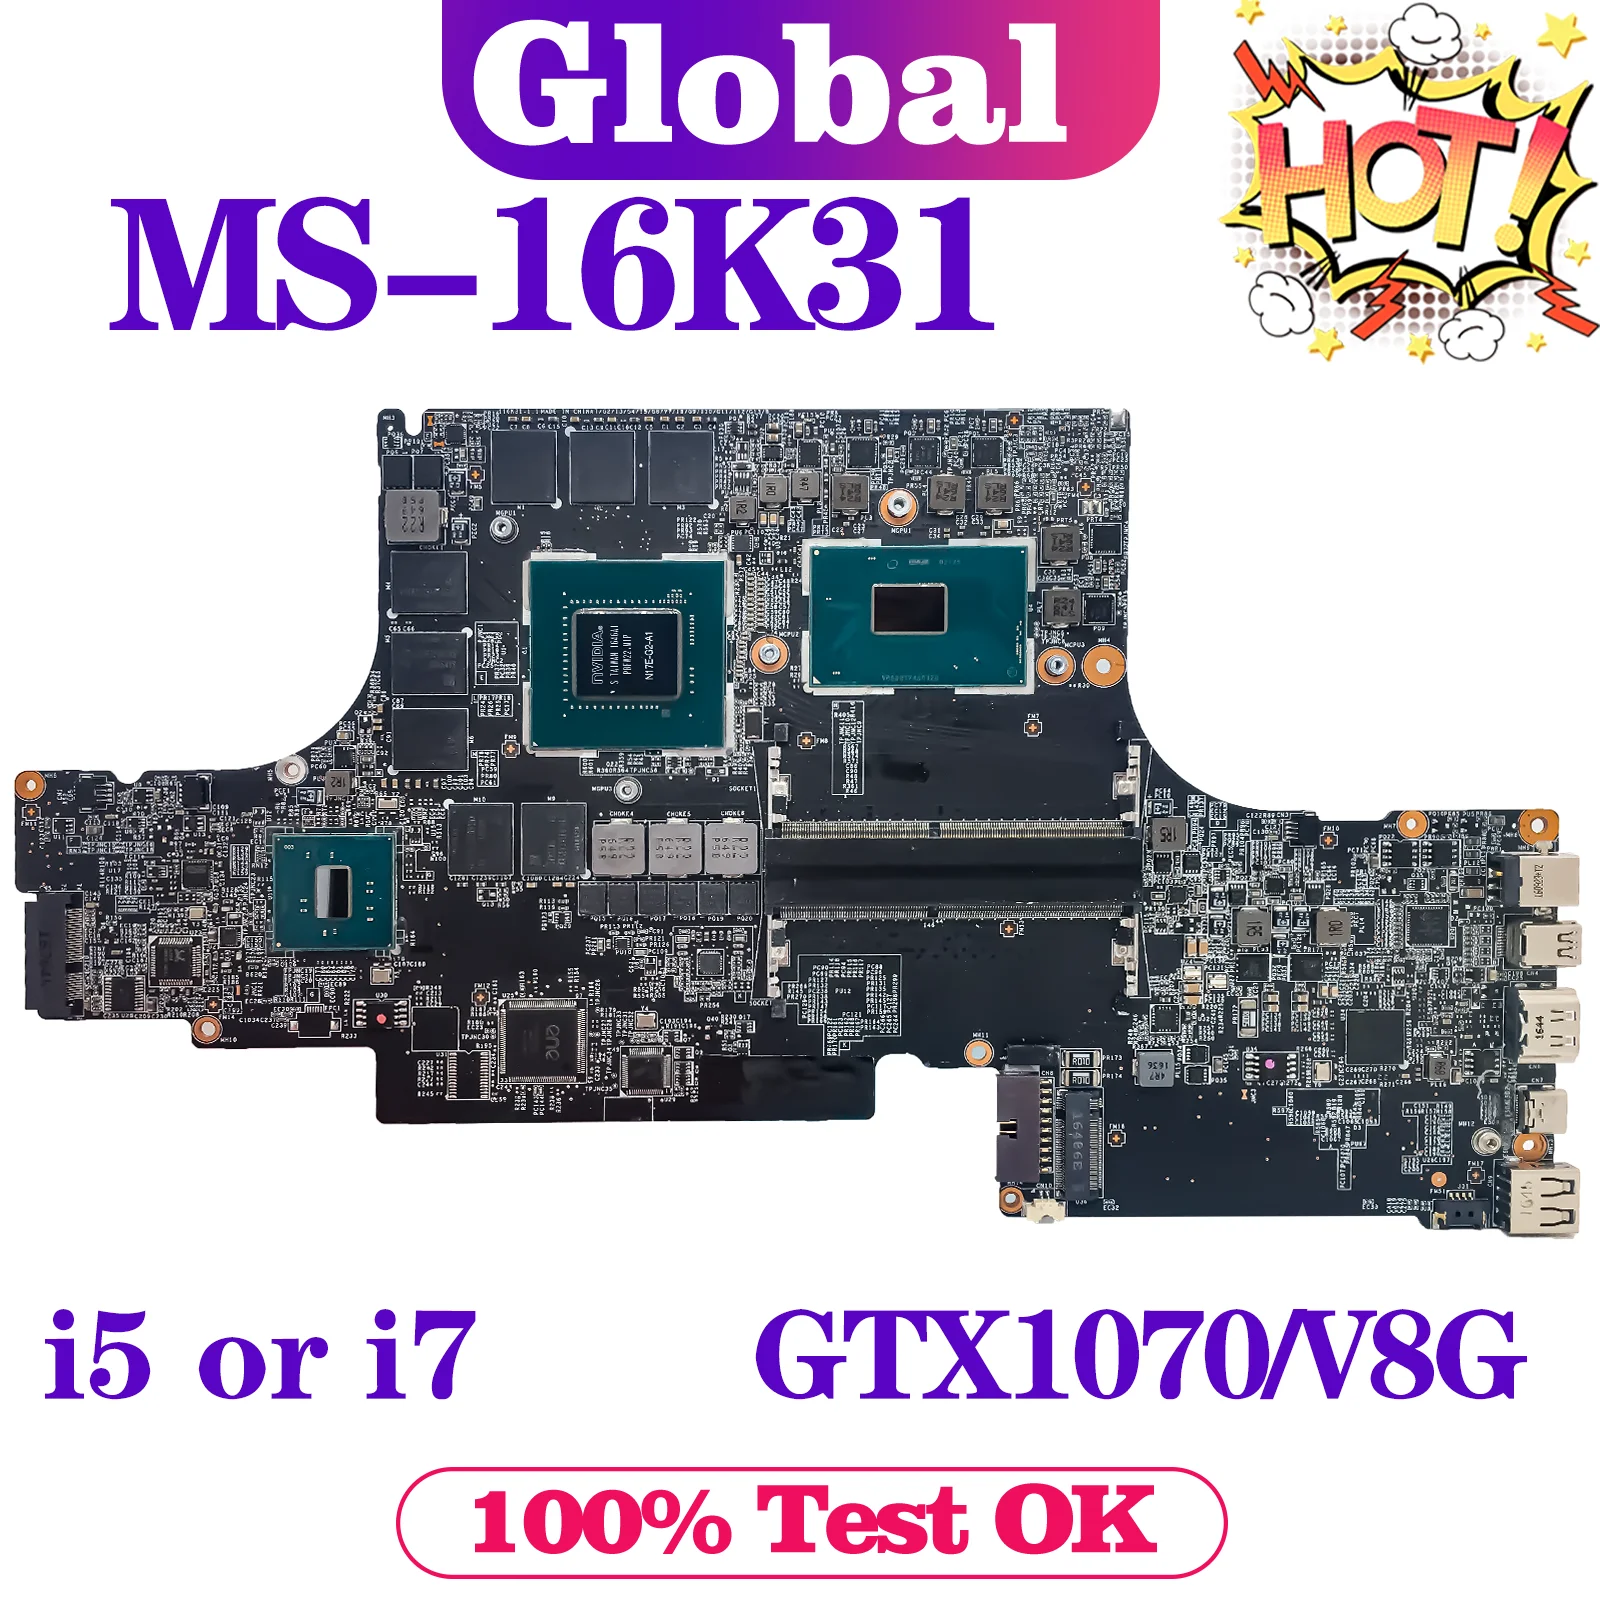 

KEFU Mainboard For MSI MS-16K31 MS-16K3 Laptop Motherboard i5 i7 7th Gen GTX1070/V8G